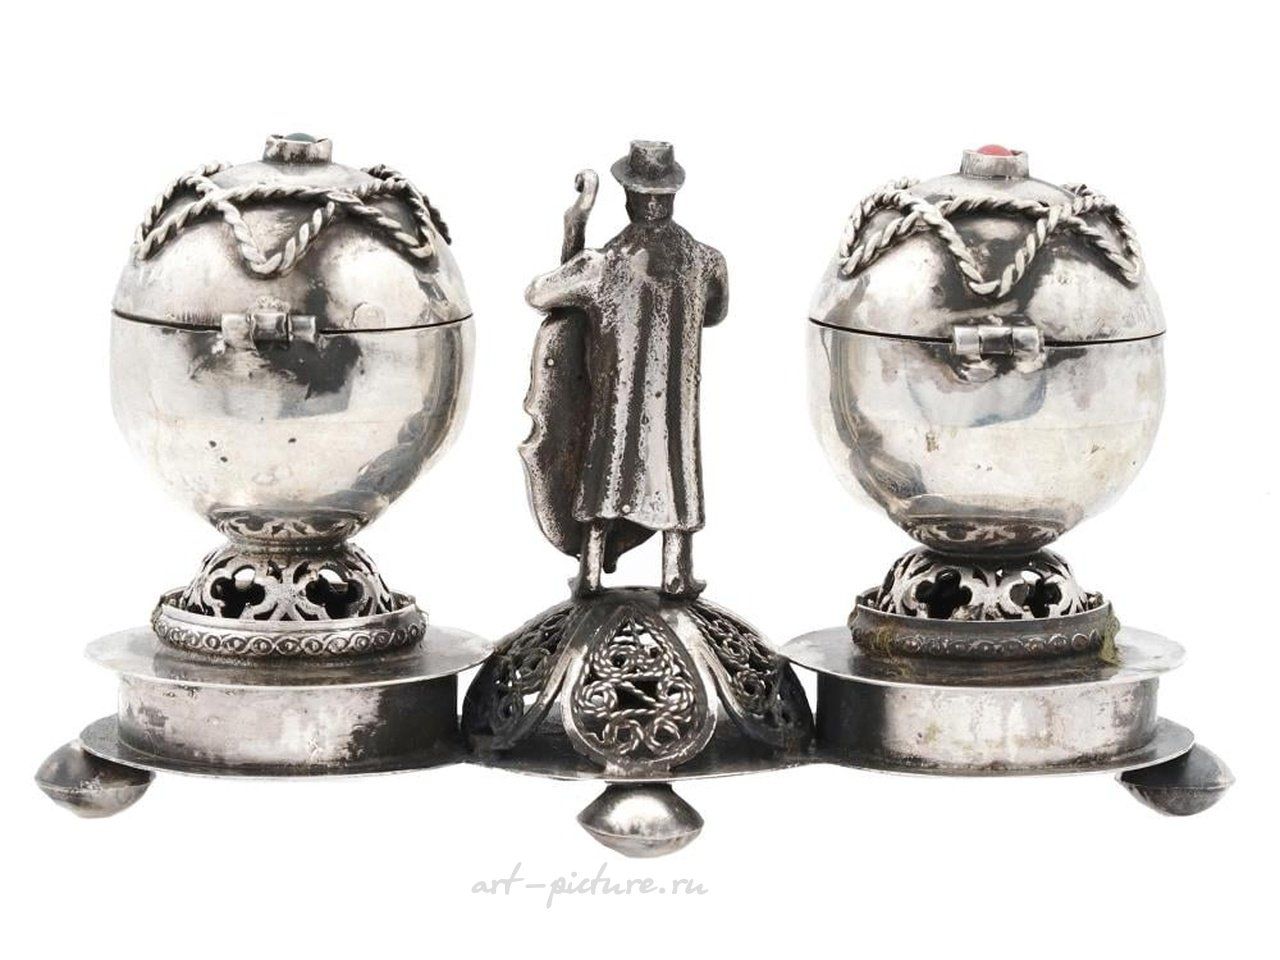 Русское серебро , Русский серебряный комплект из двух ароматных шкатулок на подставке.